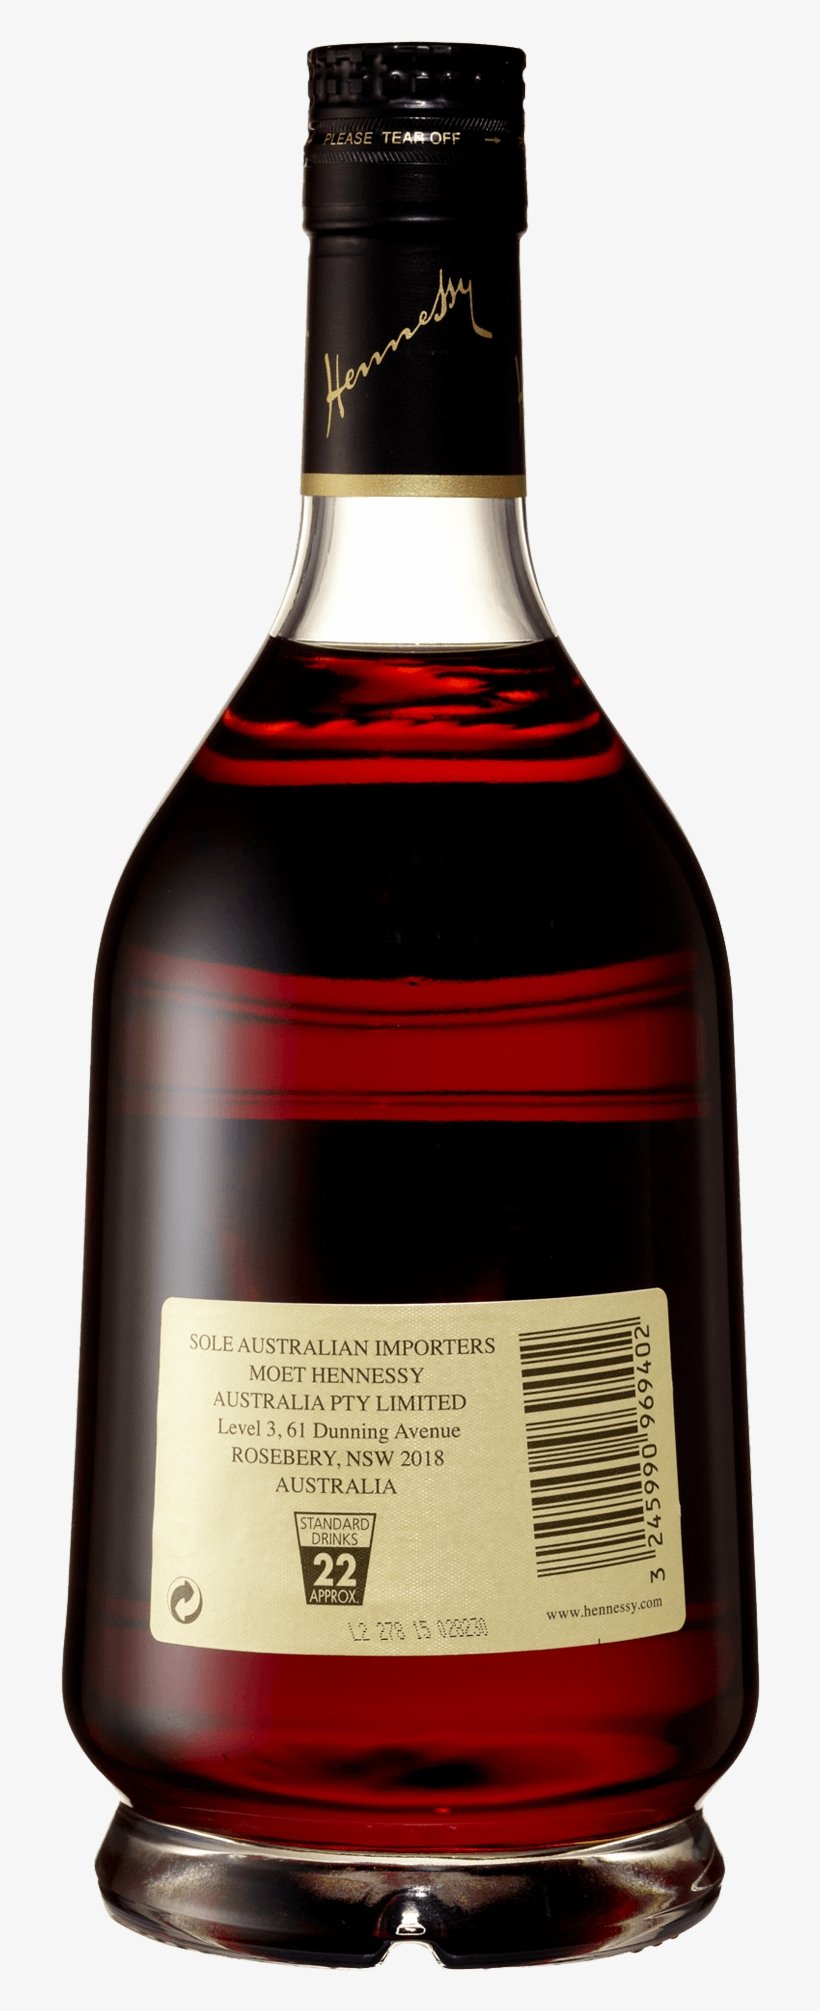 Hennessy Cognac V - Marcas De Cognac, transparent png #750036